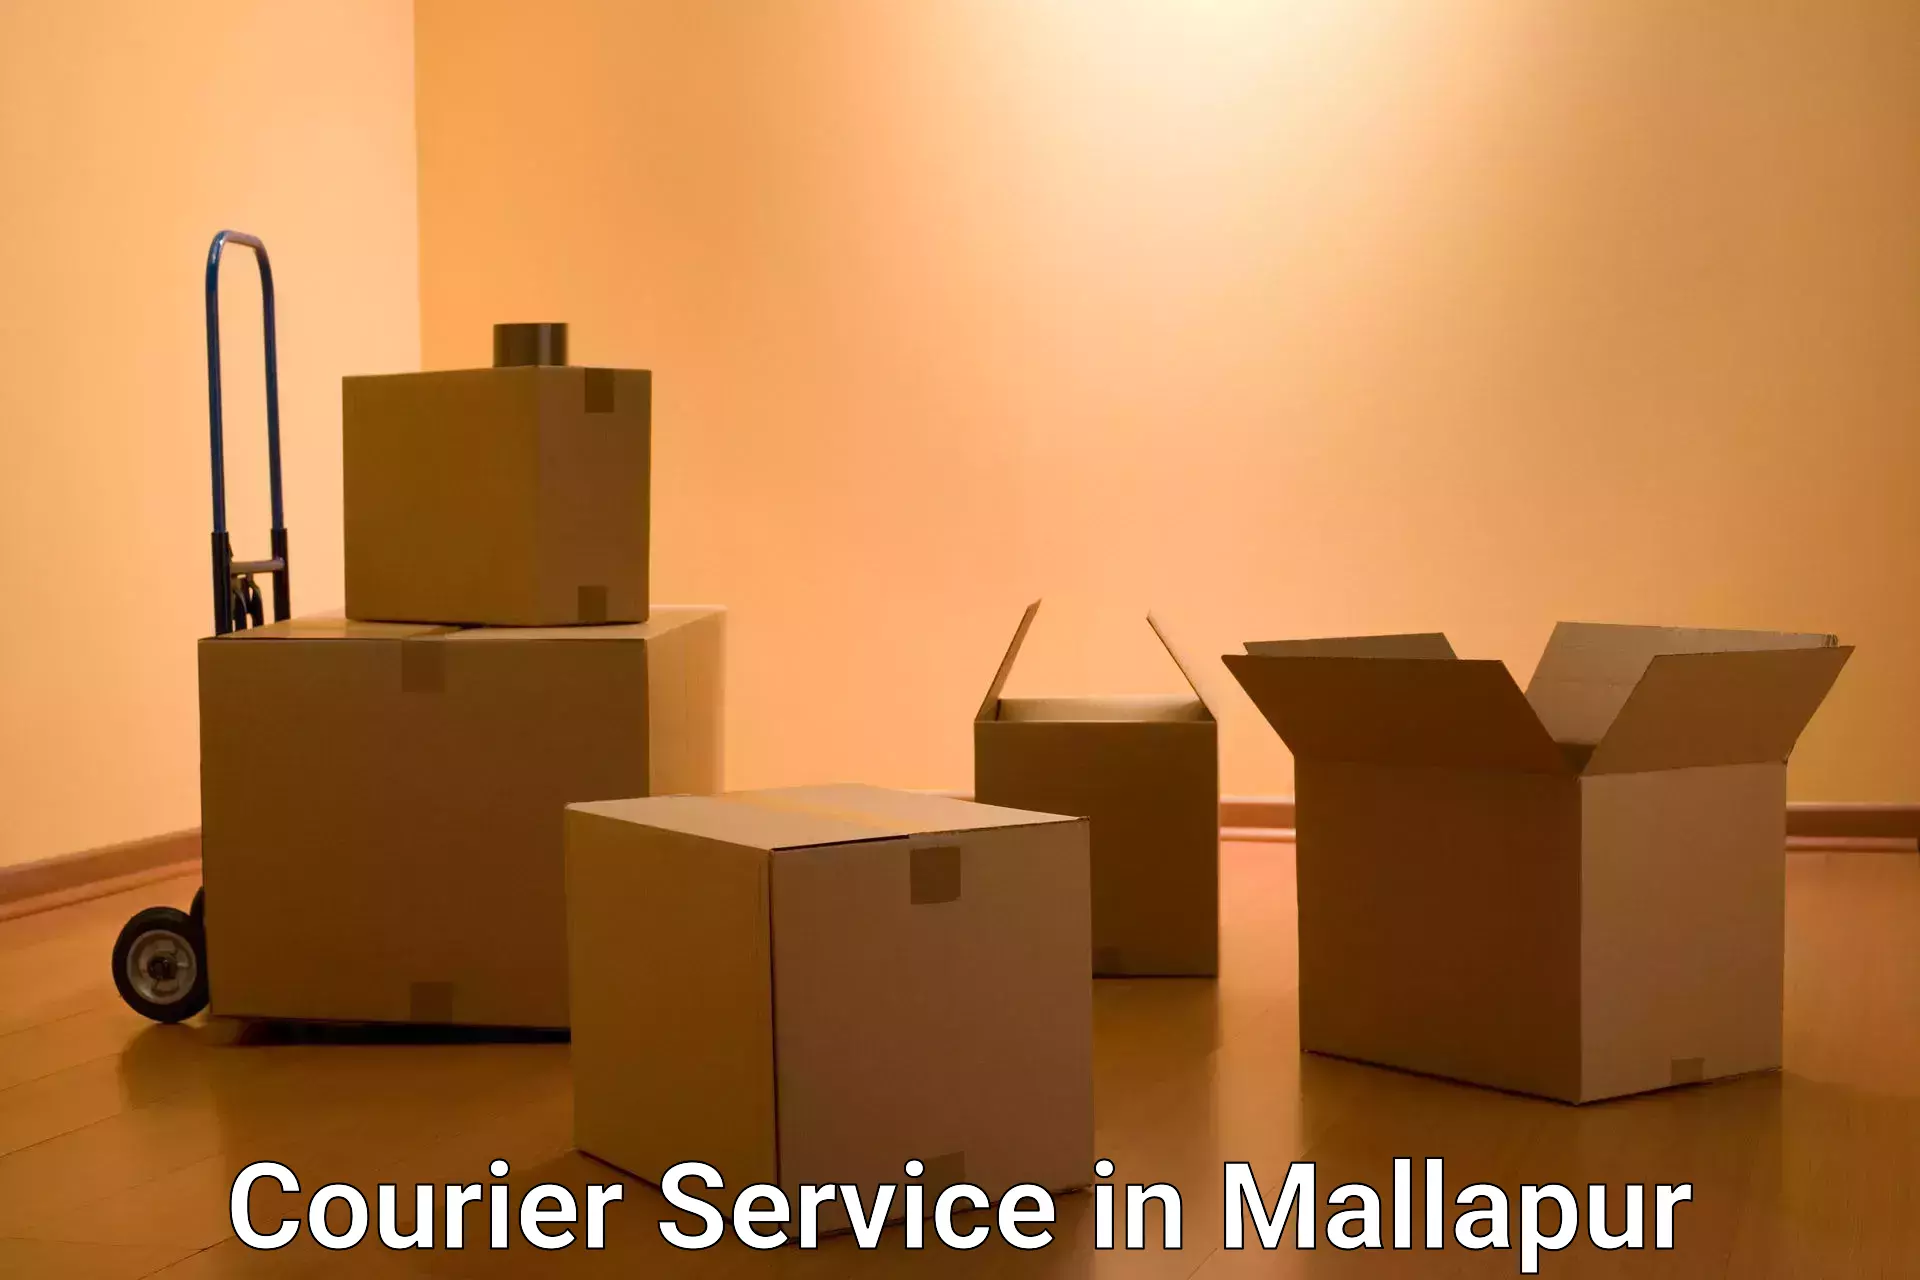 Express logistics in Mallapur